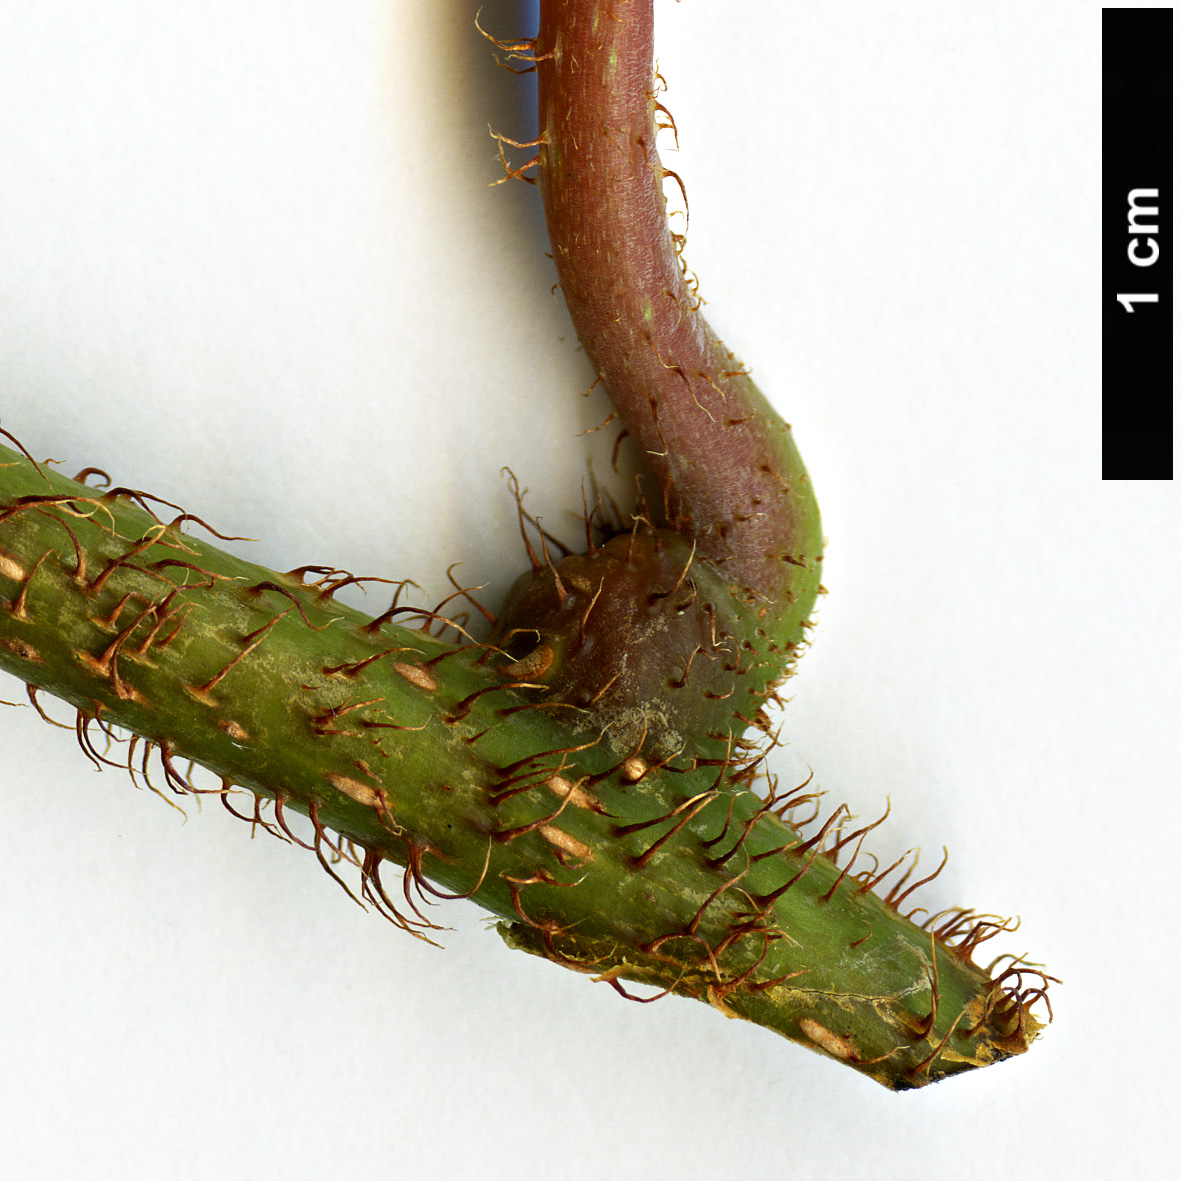 High resolution image: Family: Actinidiaceae - Genus: Actinidia - Taxon: setosa